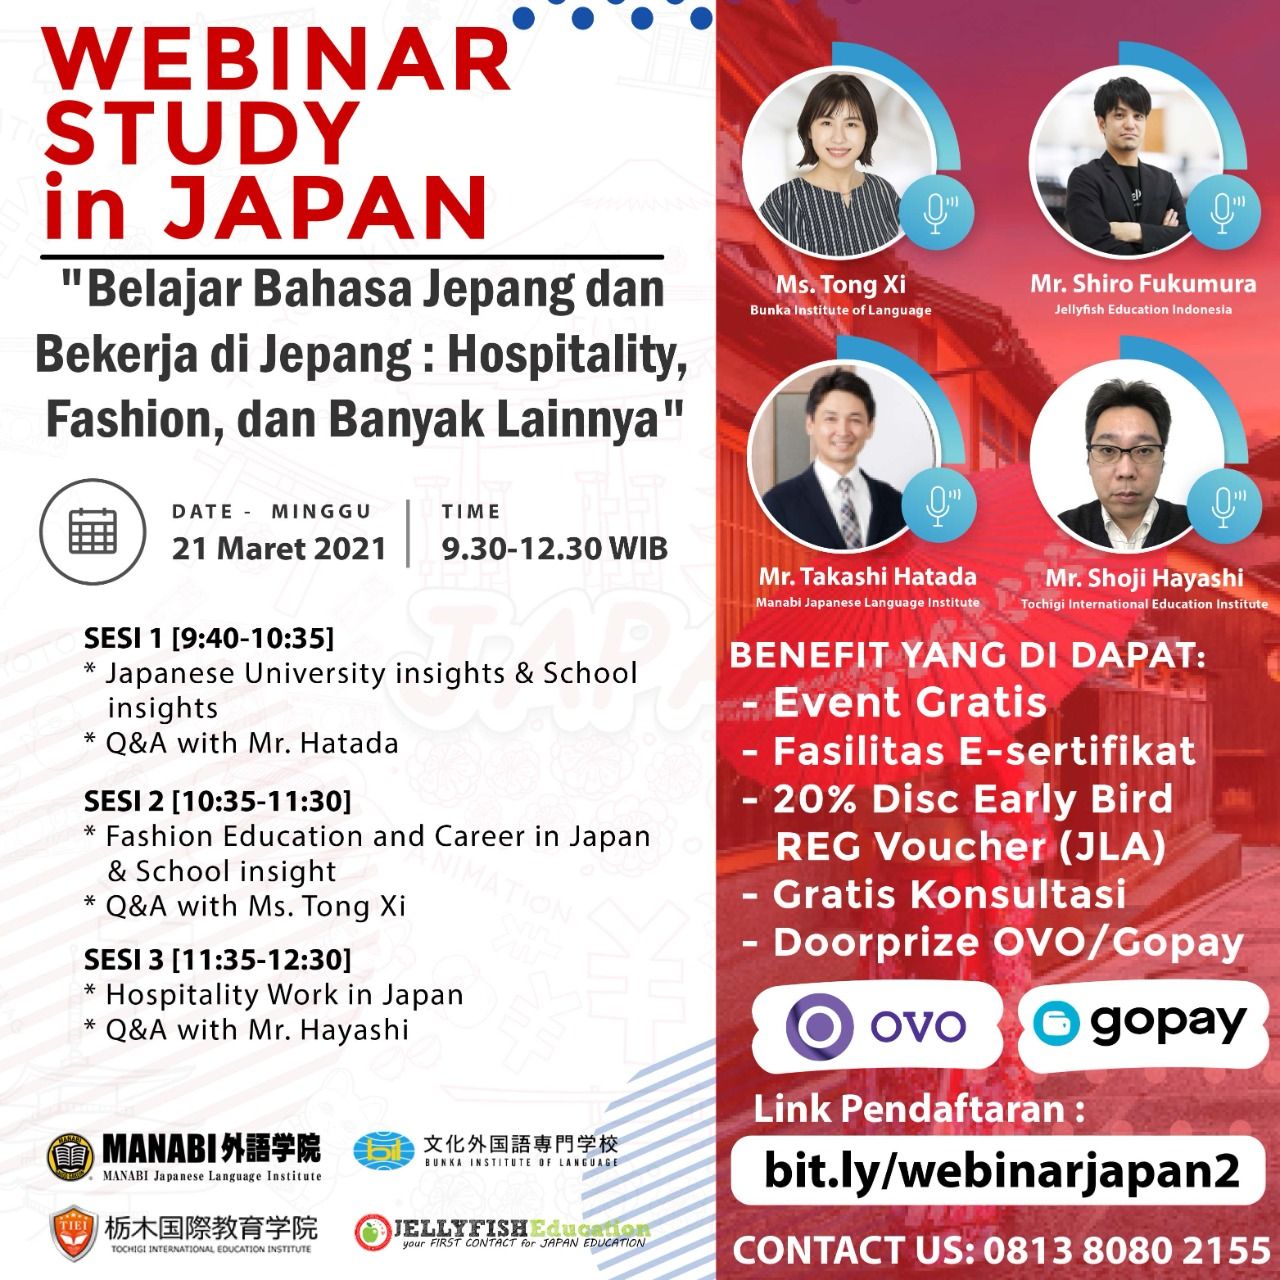 WEBINAR STUDY IN JAPAN “Belajar Bahasa Jepang dan Bekerja di Jepang : Hospitality, Fashion, dan Banyak Lainnya”